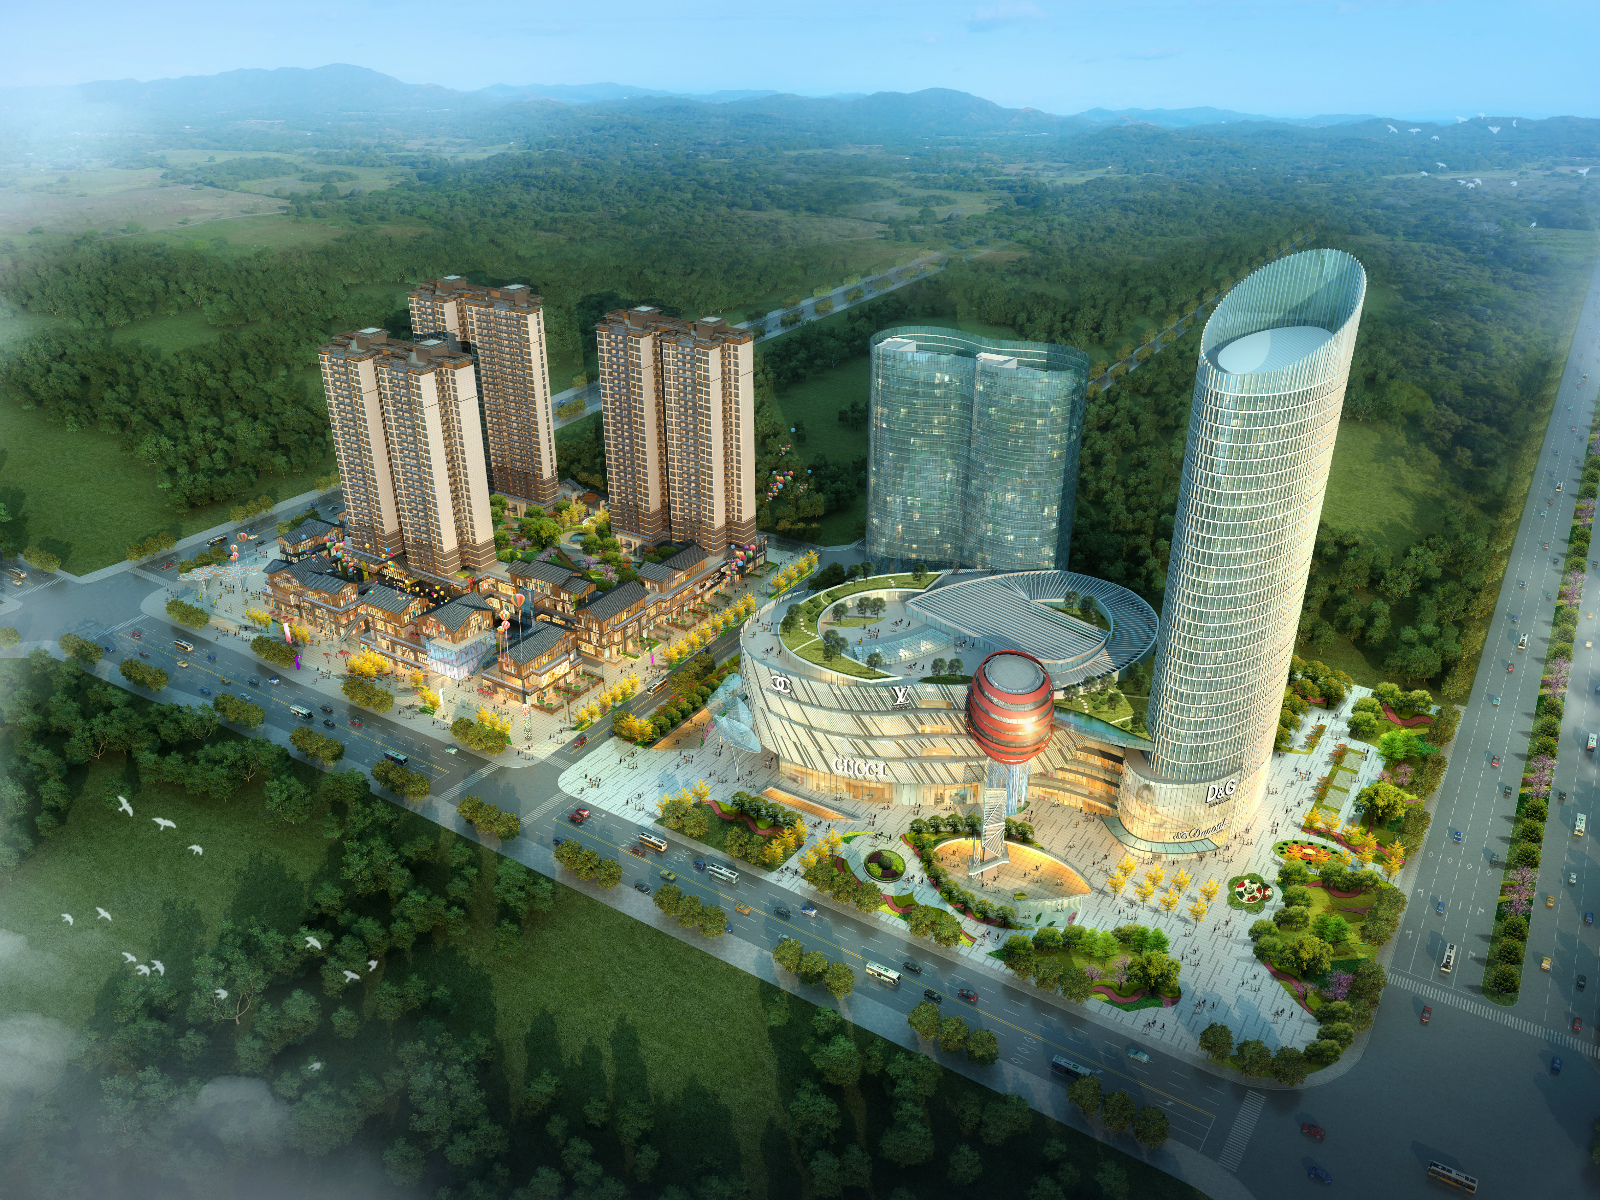 遵义民生广场景观设计 重庆风景园林网 重庆市风景园林学会